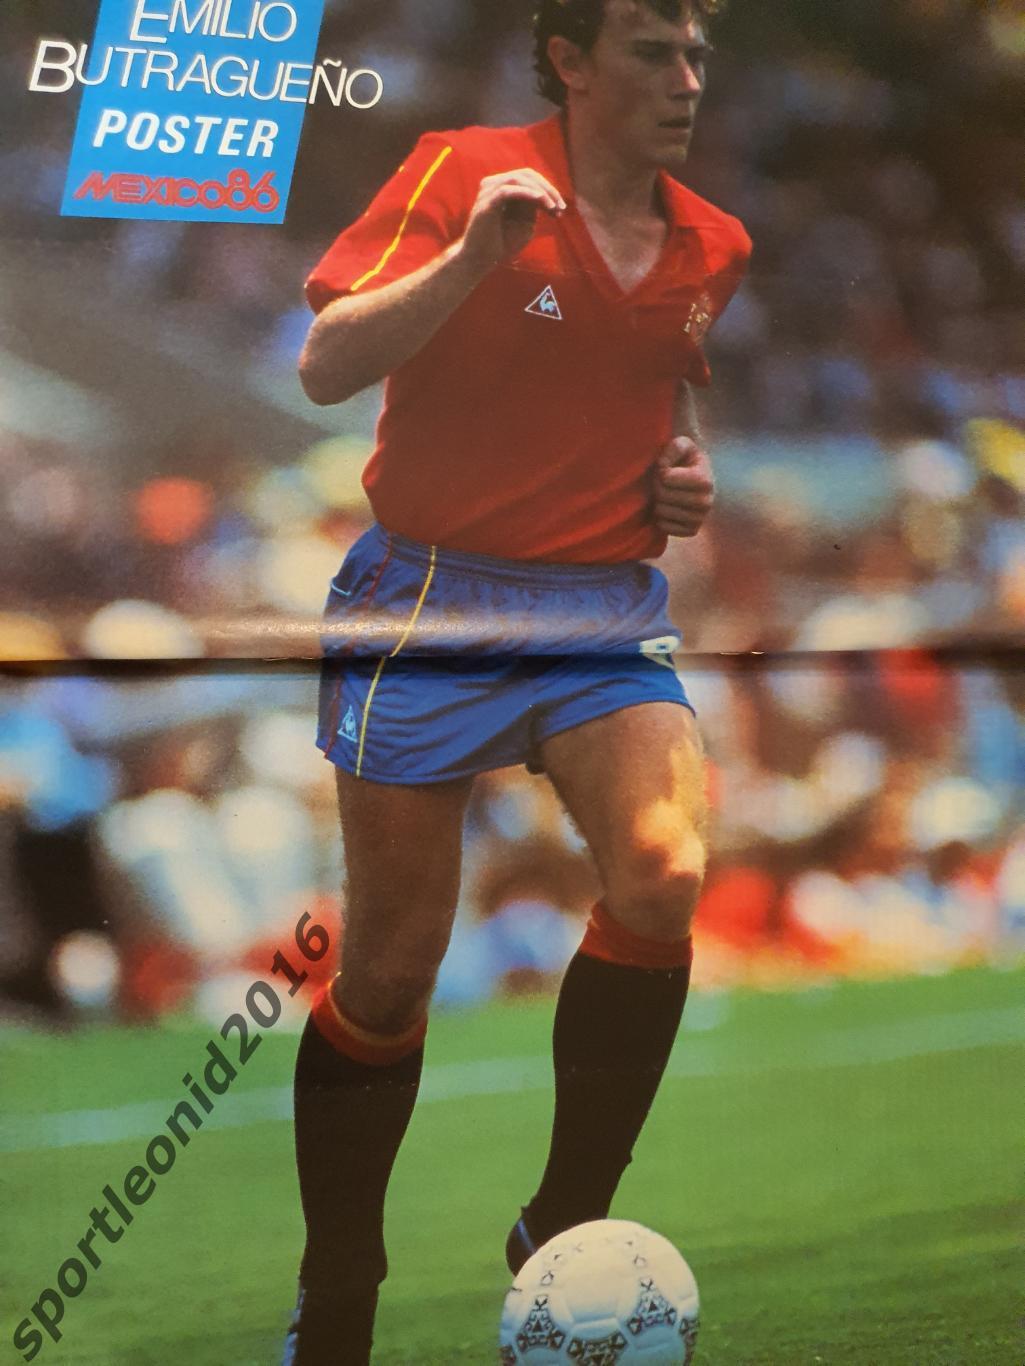 Voetbal International 1986.14 топ выпусков.В том числе итоговые к ЧМ-86.2 2